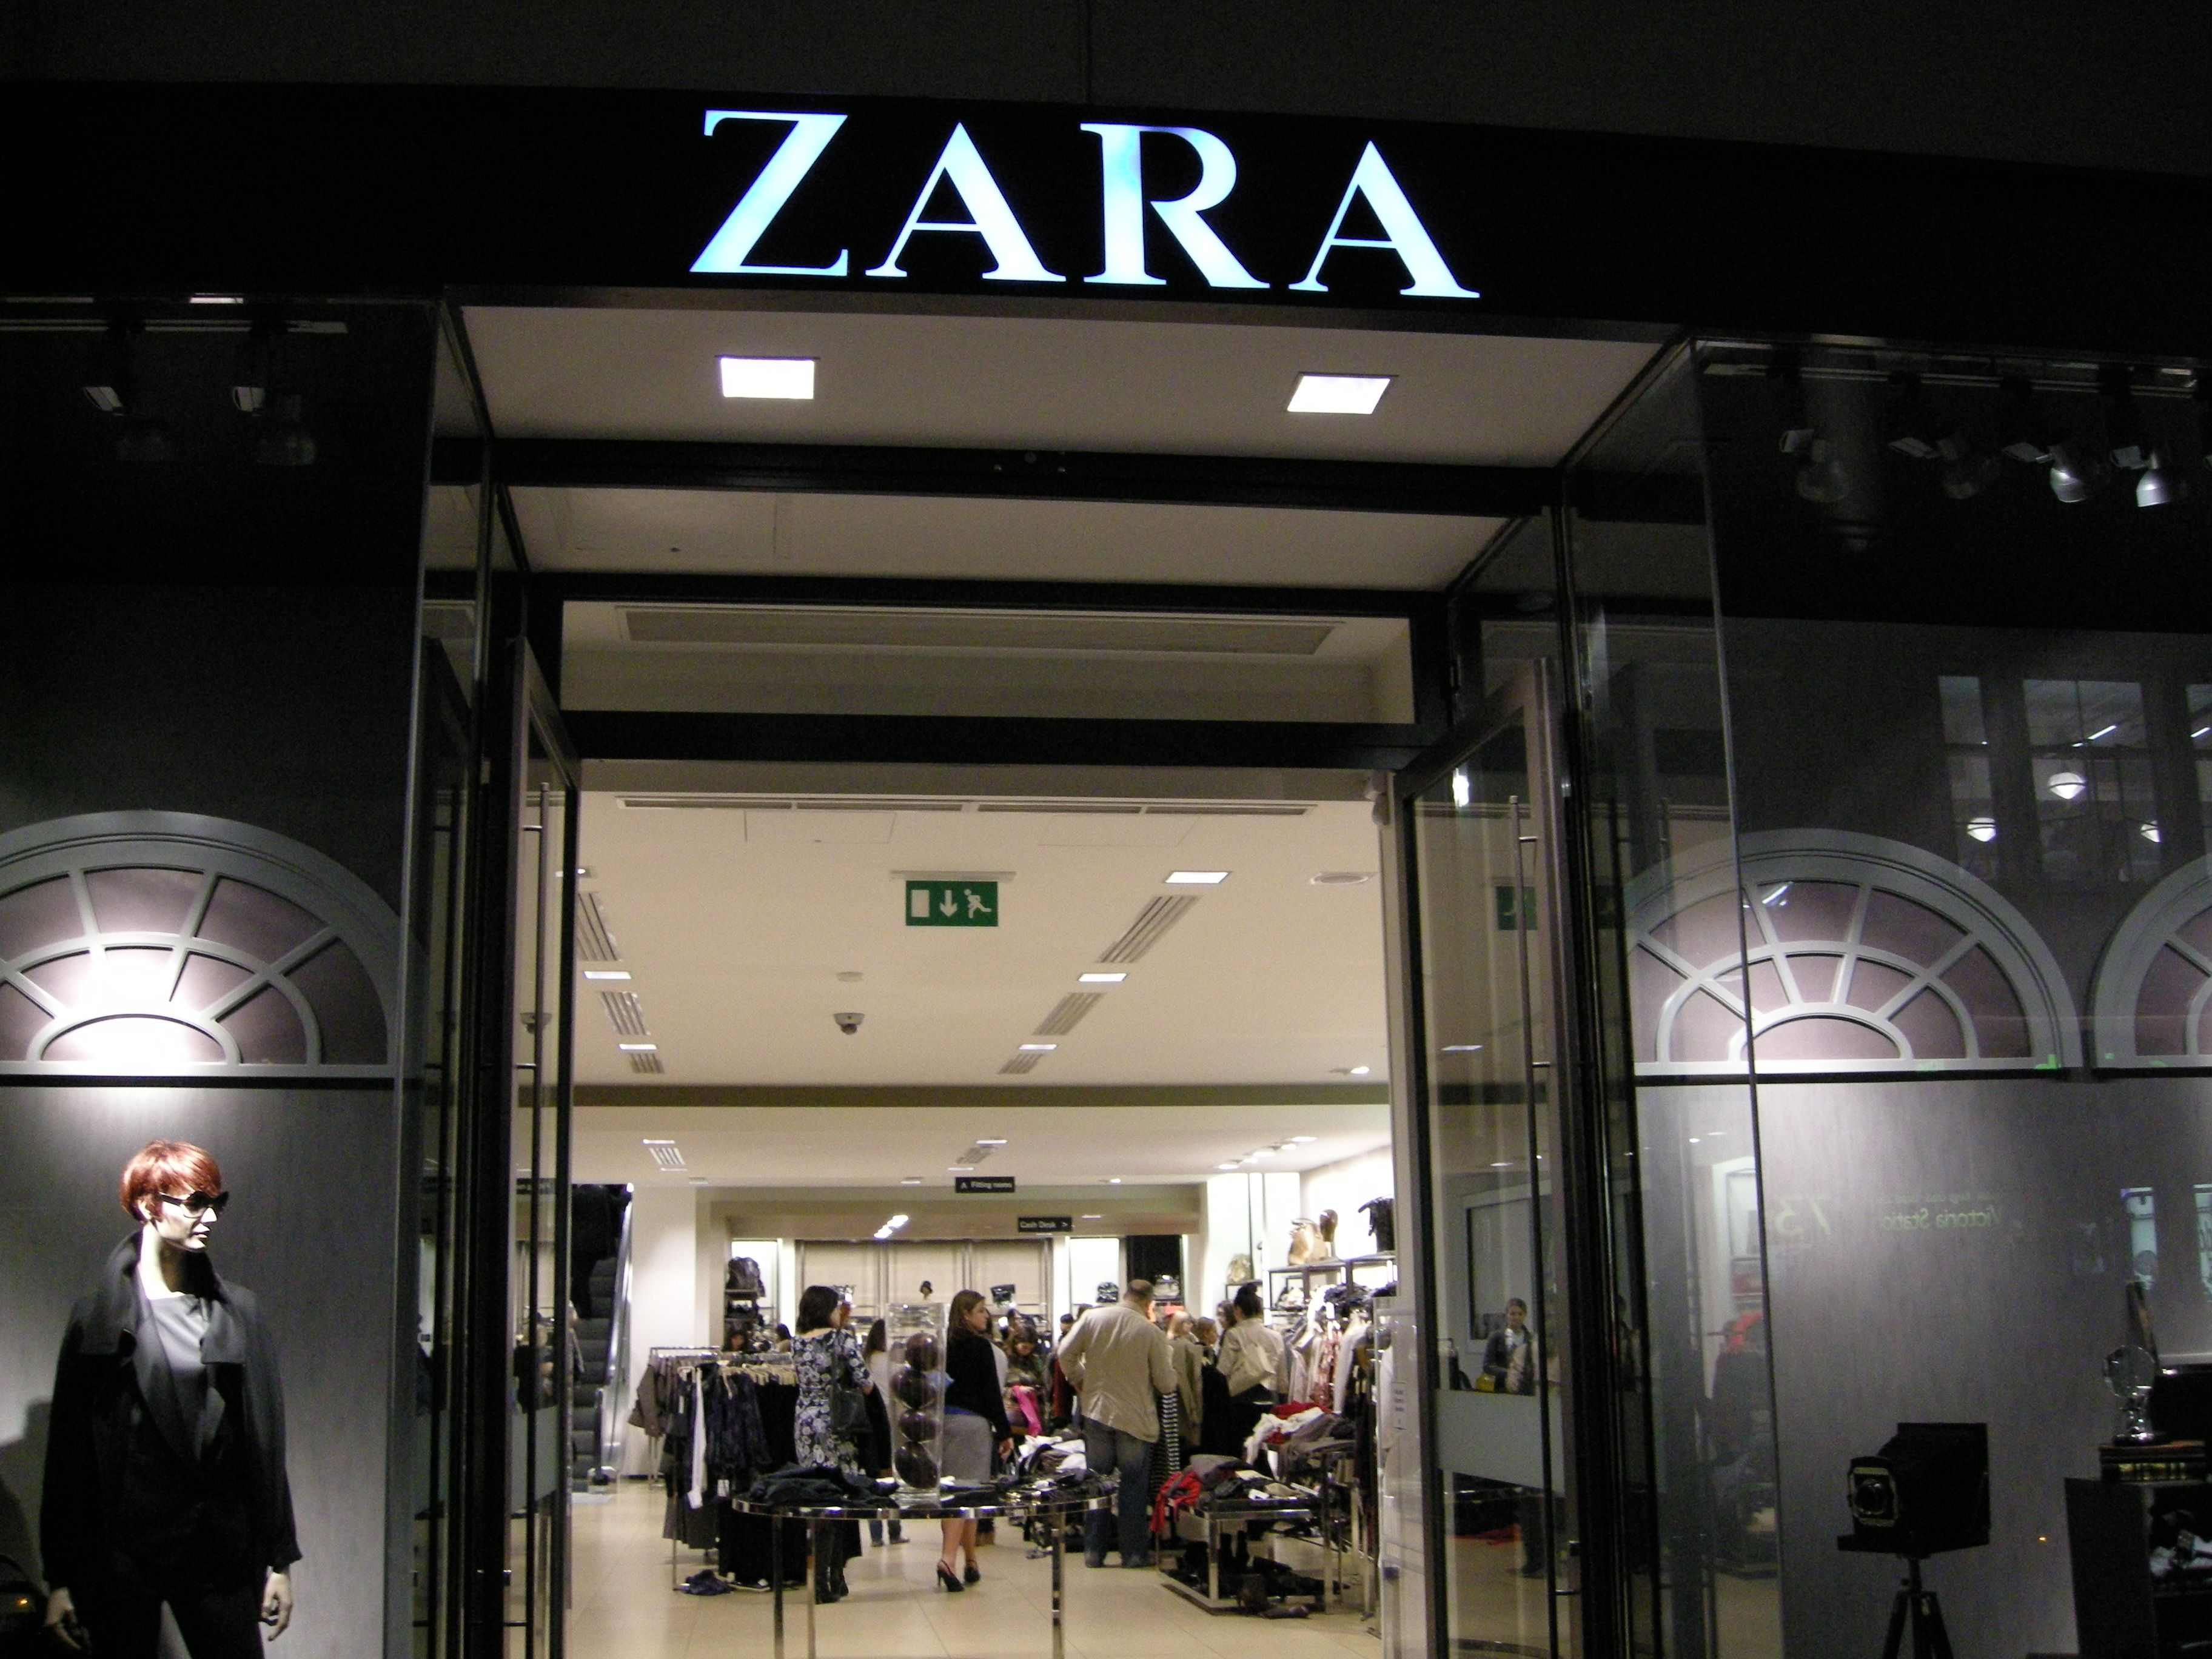 Las etiquetas de Zara y el significado de sus símbolos